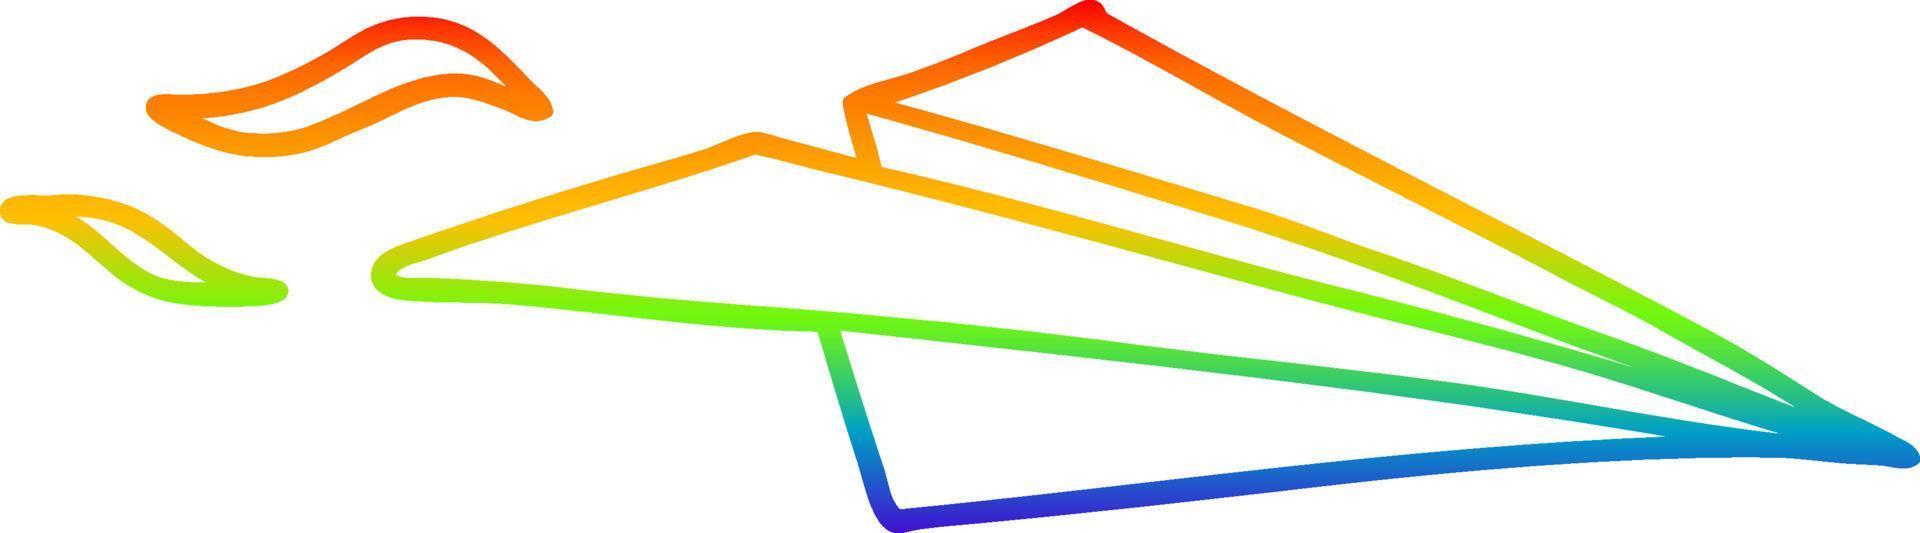 arcobaleno gradiente linea disegno cartone animato aeroplano di carta vettore